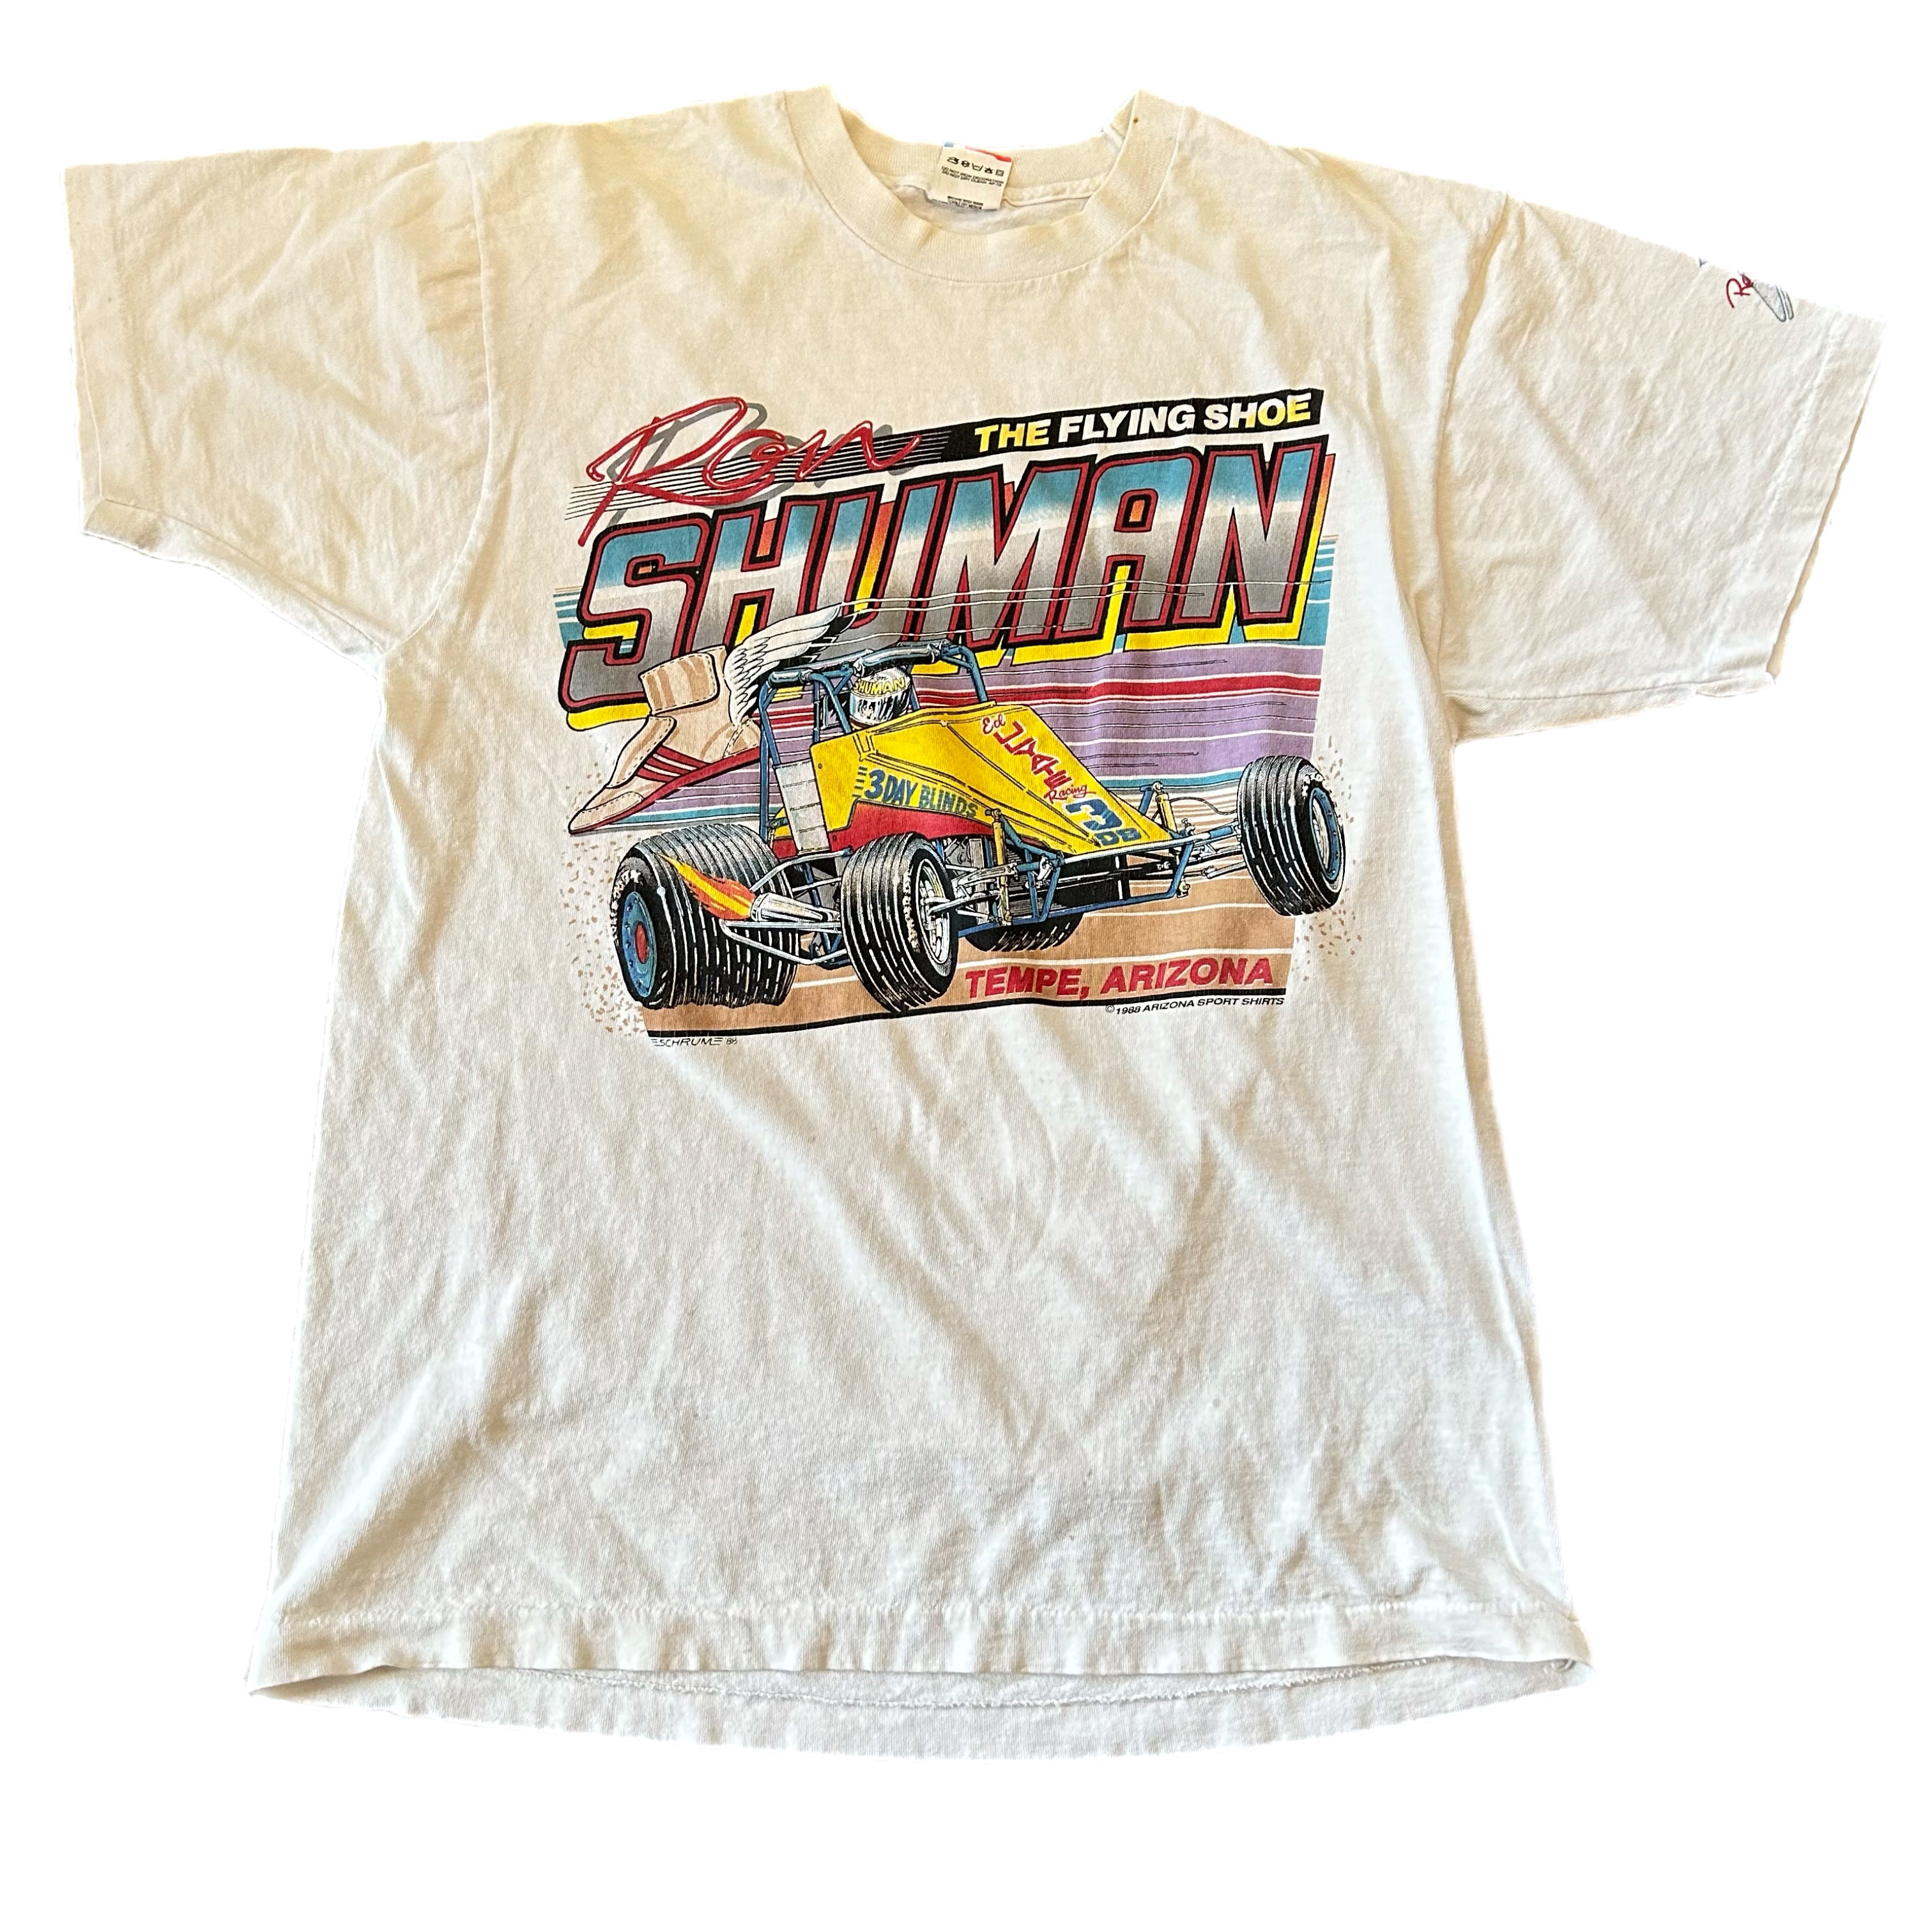 Vintage 1990s Sprint Car Racing Tee